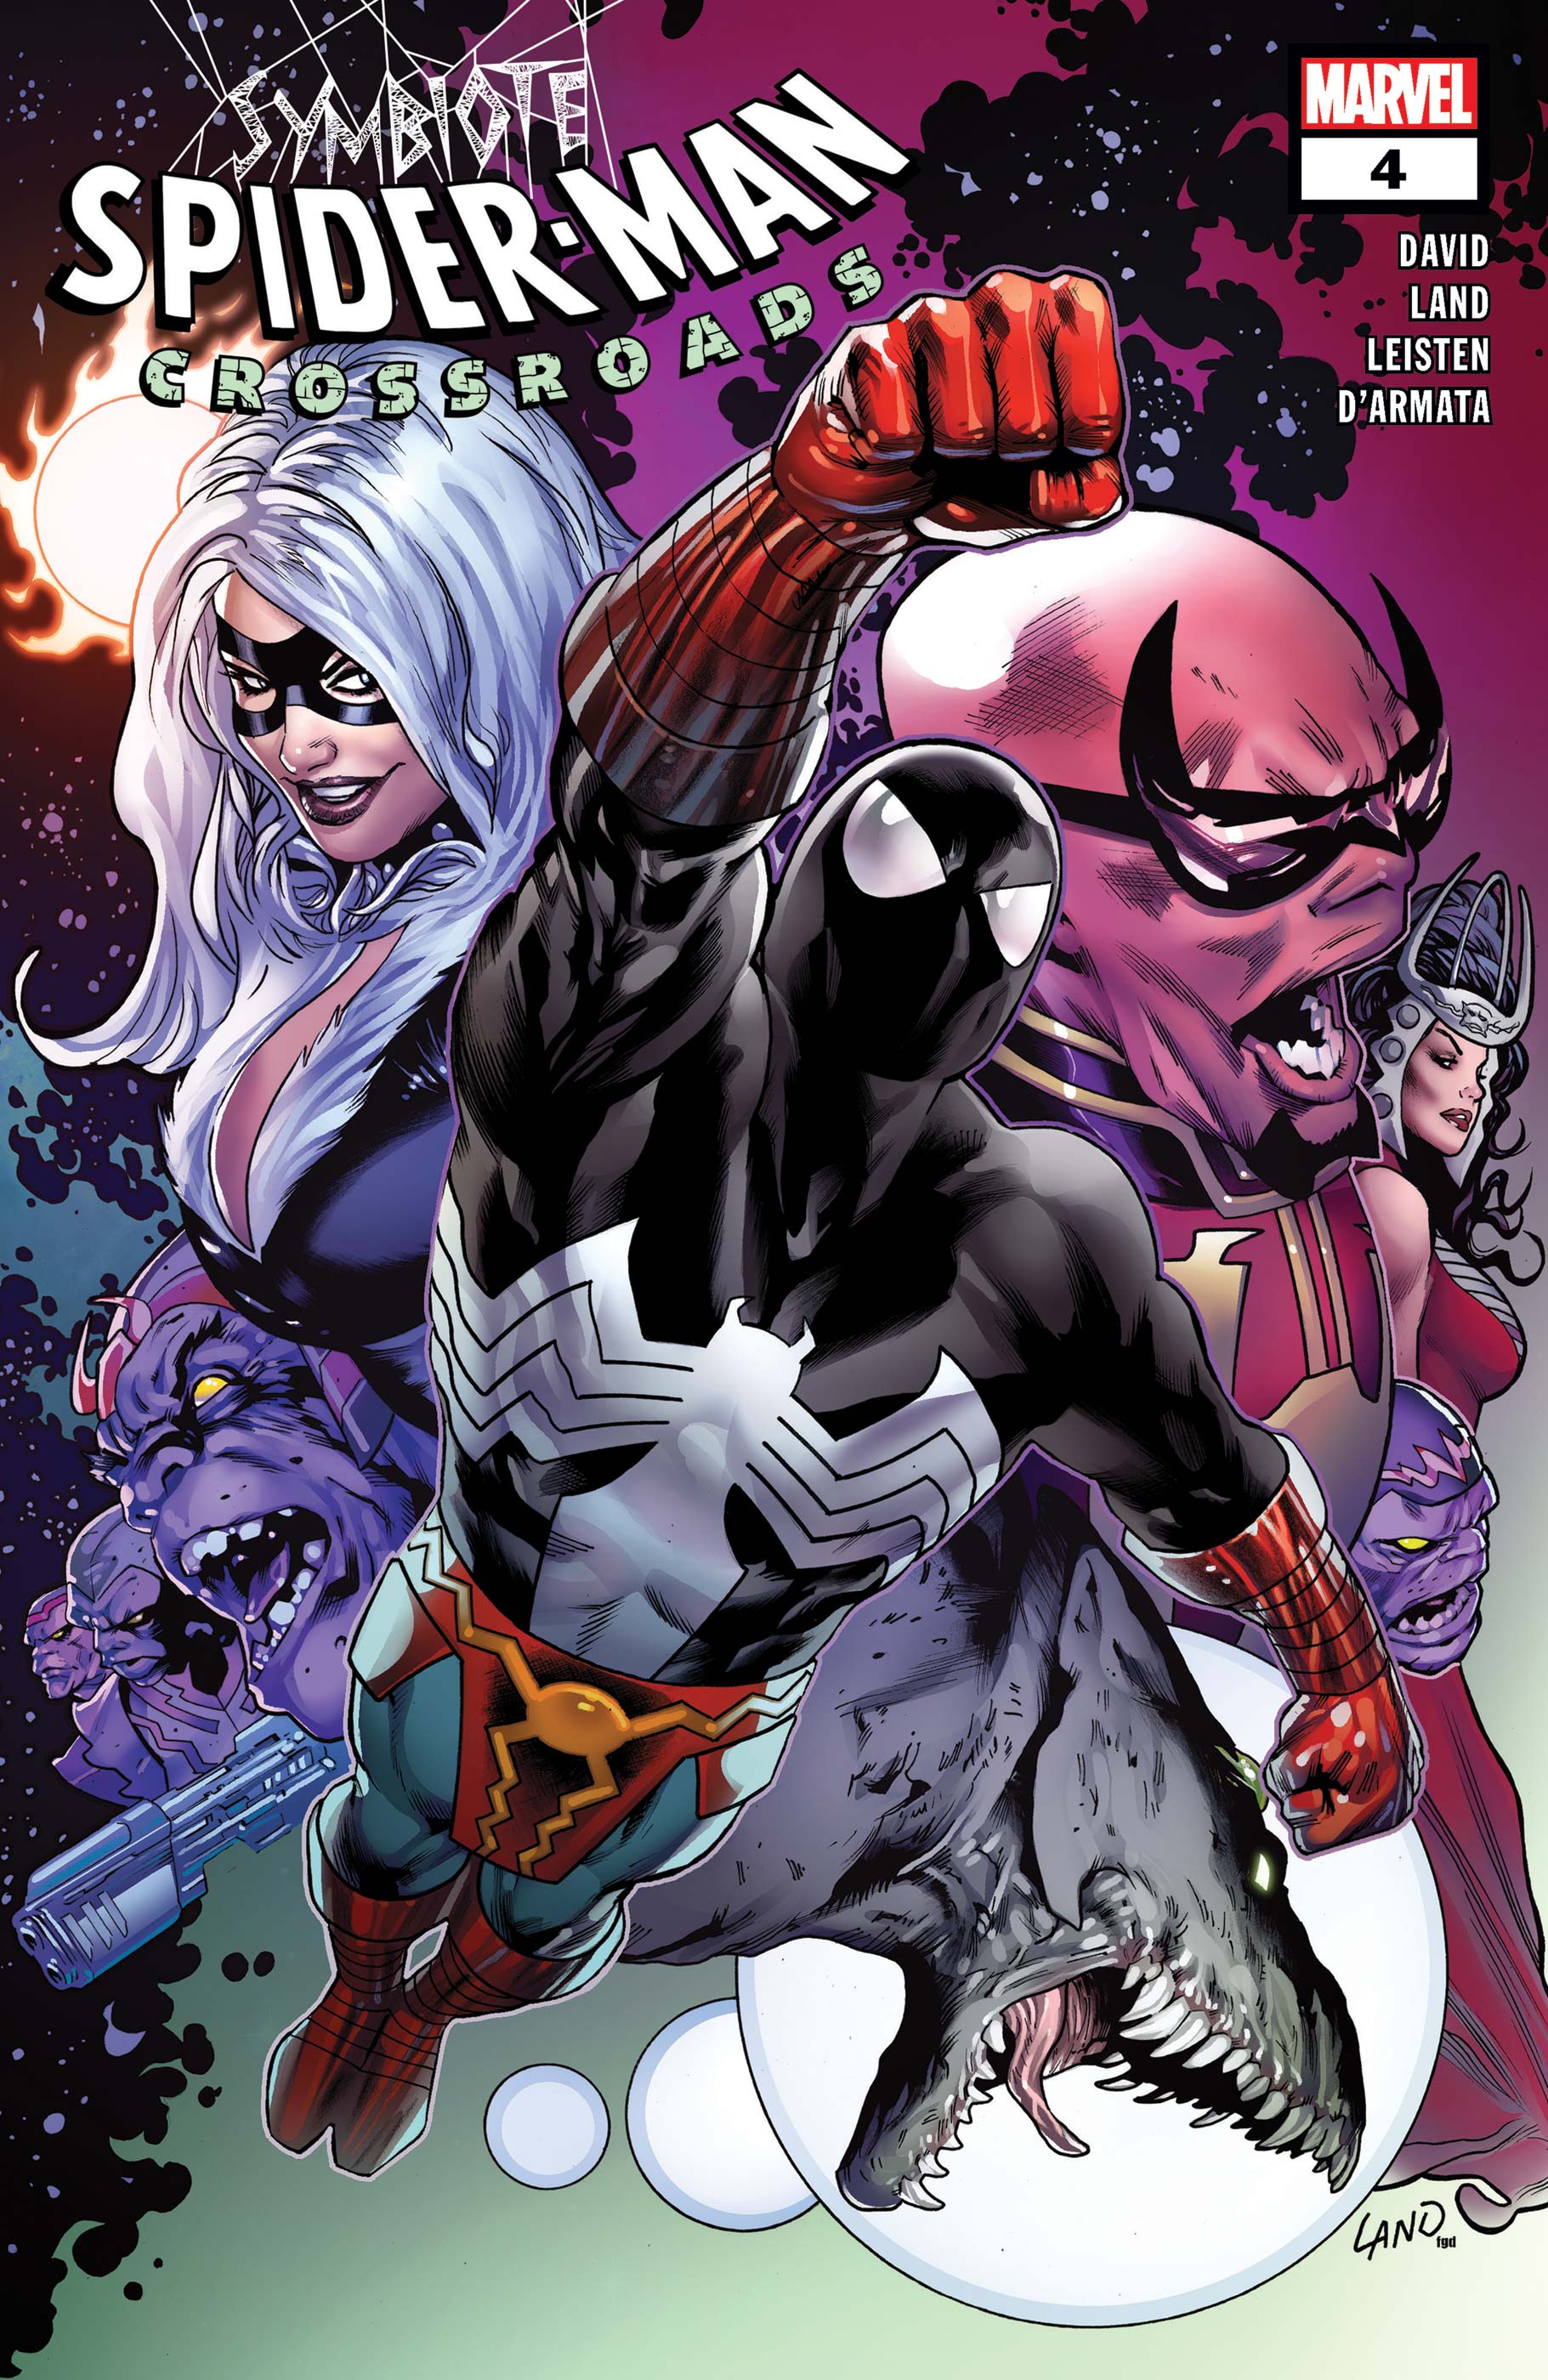 Symbiote Spider-Man: Crossroads (2021) #4